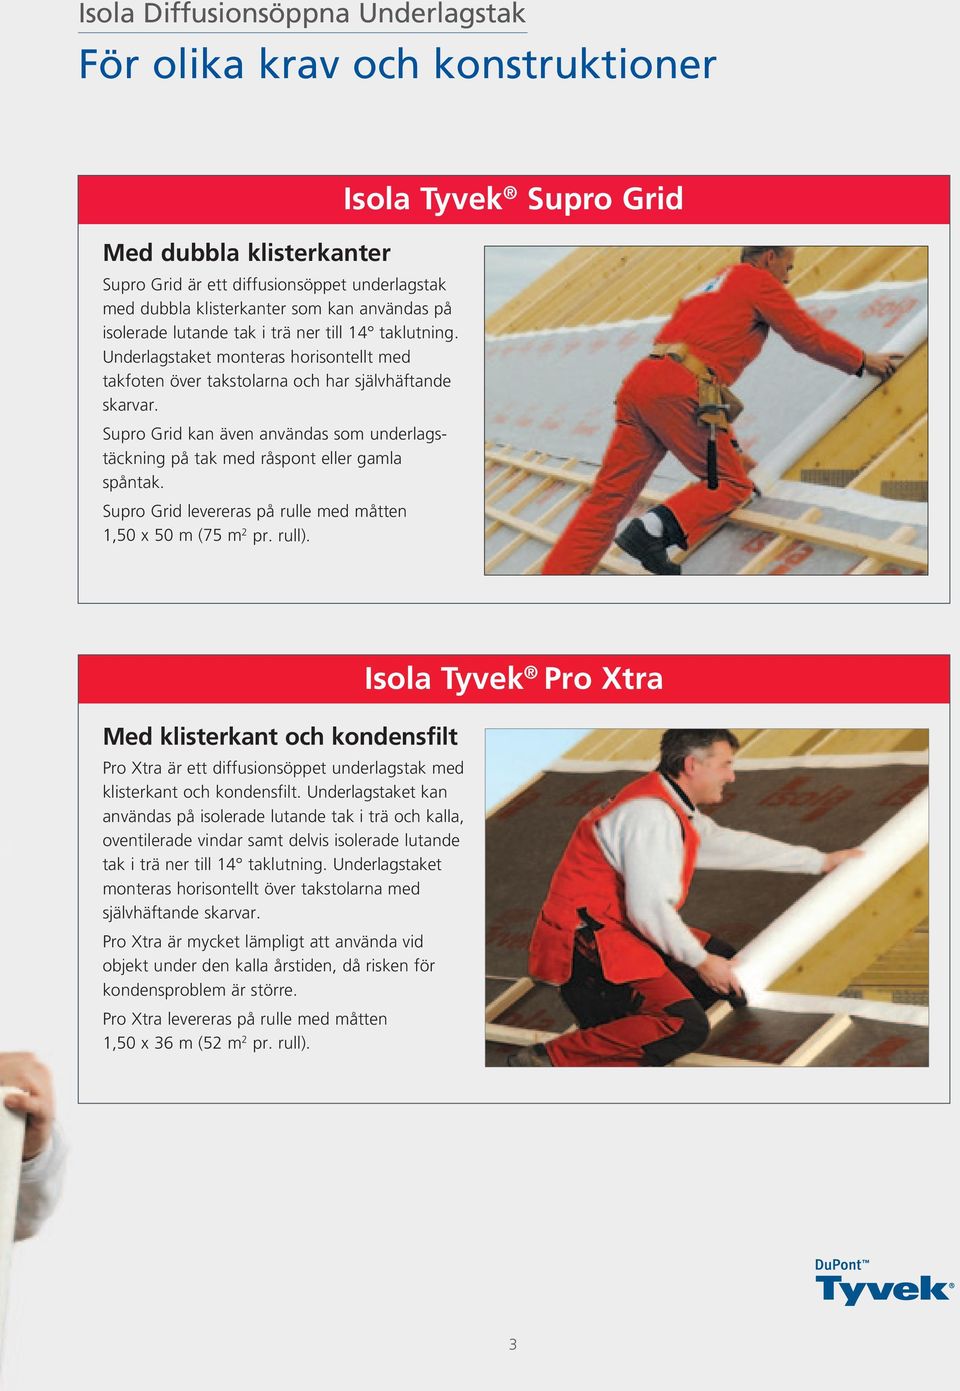 Supro Grid kan även användas som underlagstäckning på tak med råspont eller gamla spåntak. Supro Grid levereras på rulle med måtten 1,50 x 50 m (75 m 2 pr. rull).